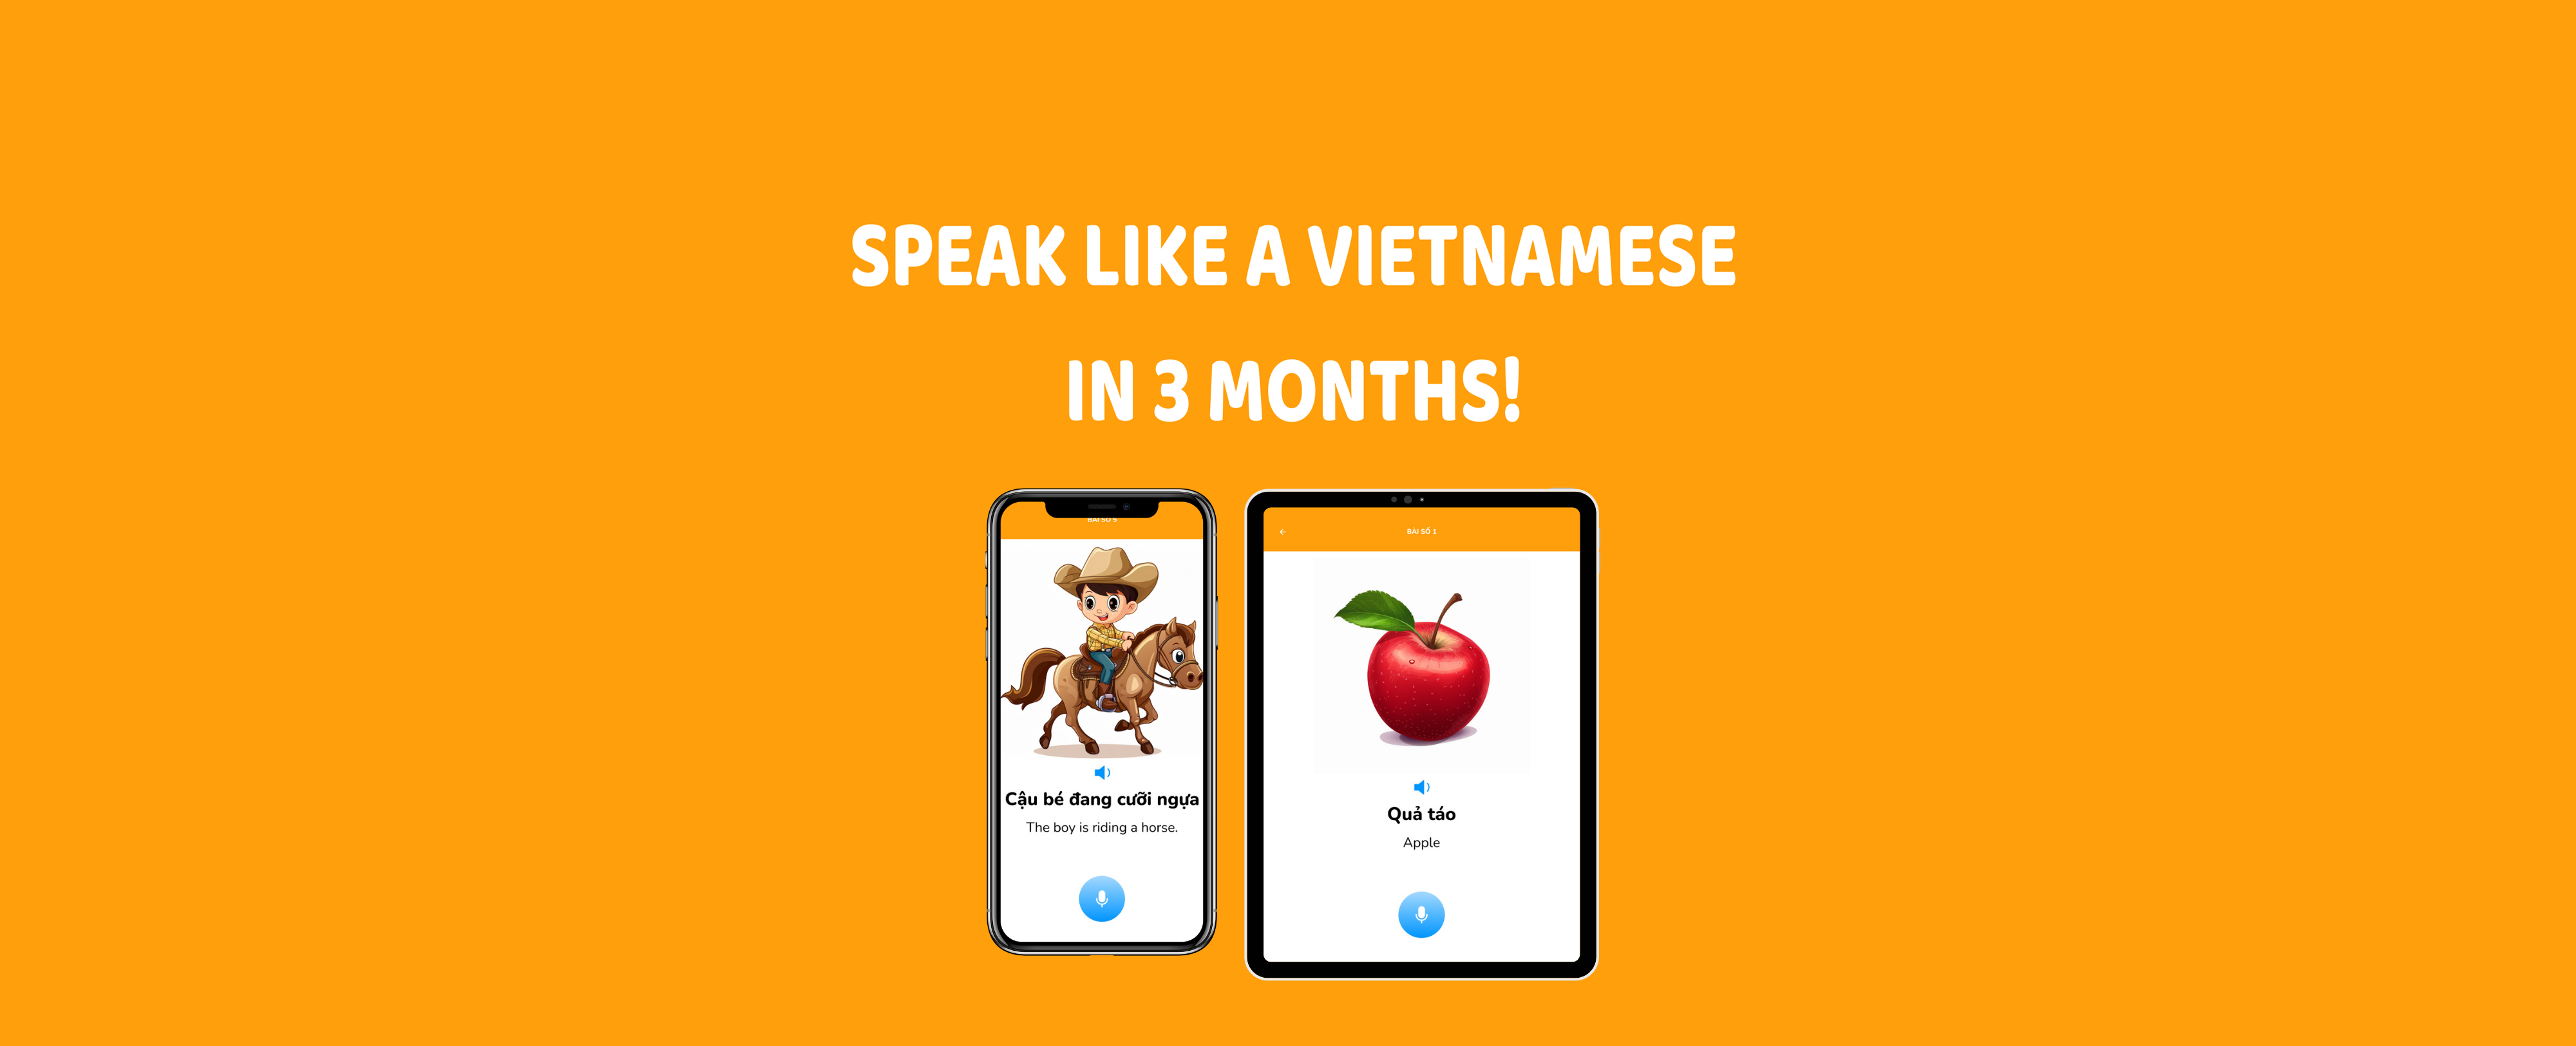 Ứng dụng học tiếng Việt cho trẻ em Hải Ngoại Ứng dụng học văn hóa Việt cho trẻ em Ứng dụng học tiếng Việt trên điện thoại cho trẻ em hải ngoại